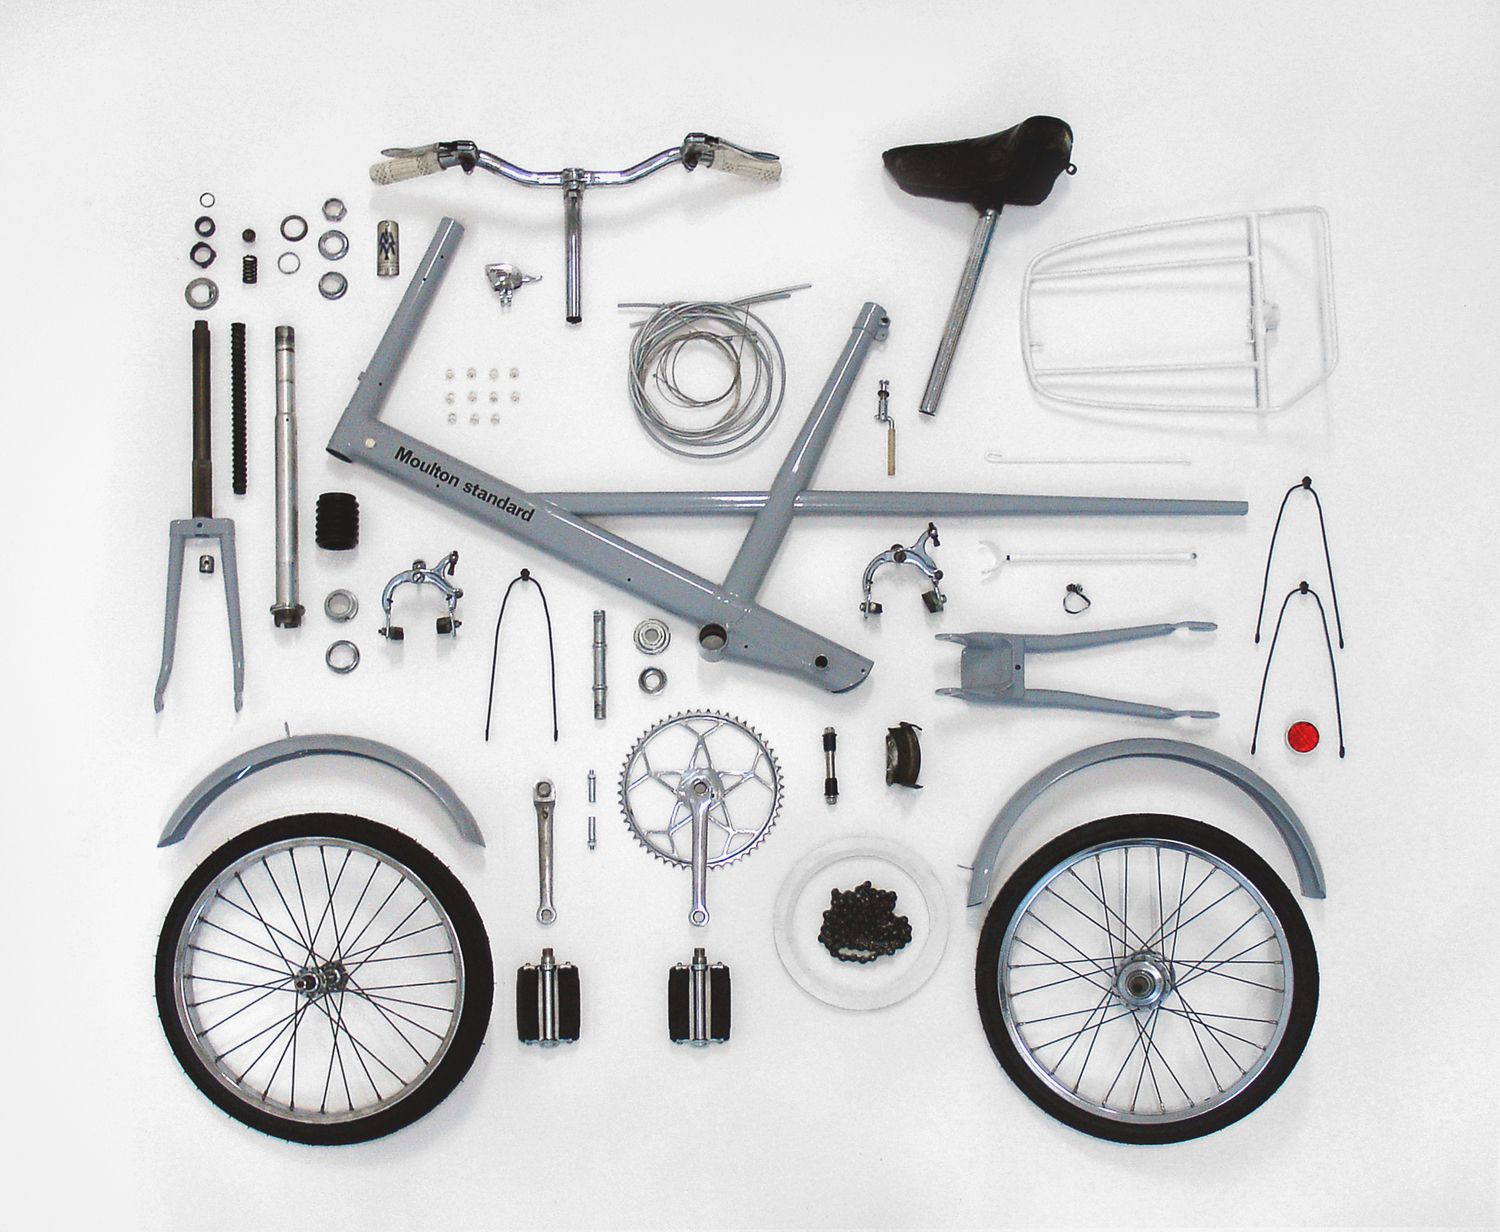 Bisikletin parçaları, componentleri, bileşenleri.